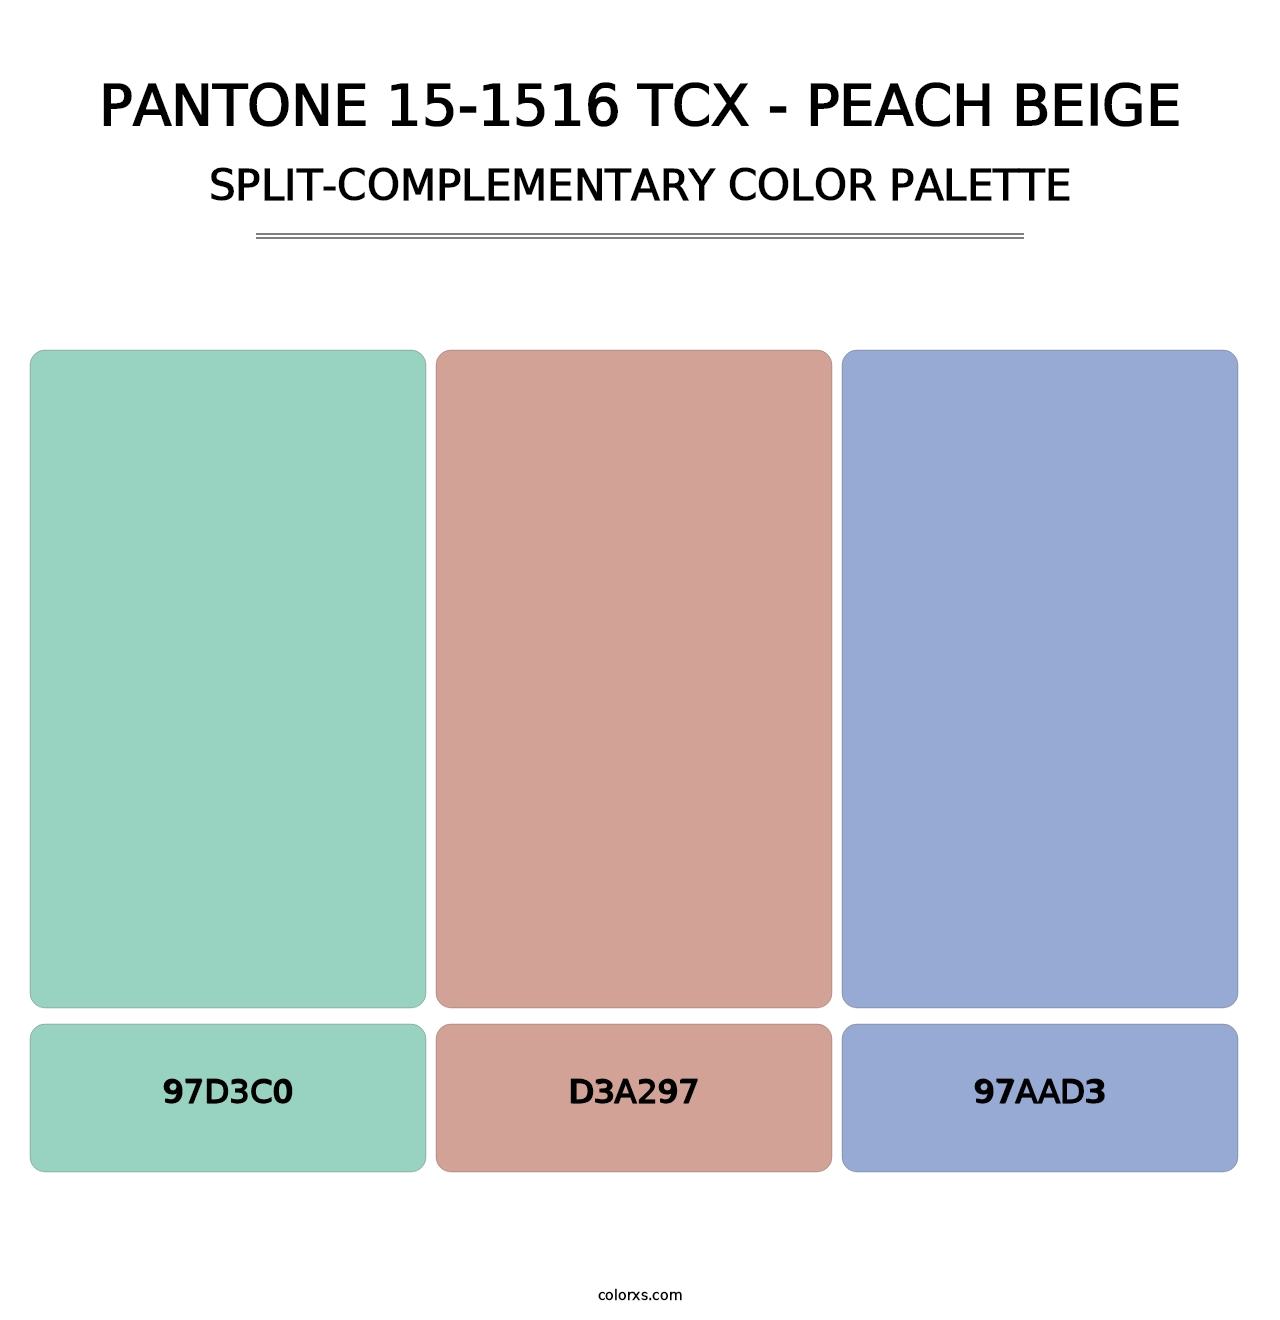 PANTONE 15-1516 TCX - Peach Beige - Split-Complementary Color Palette